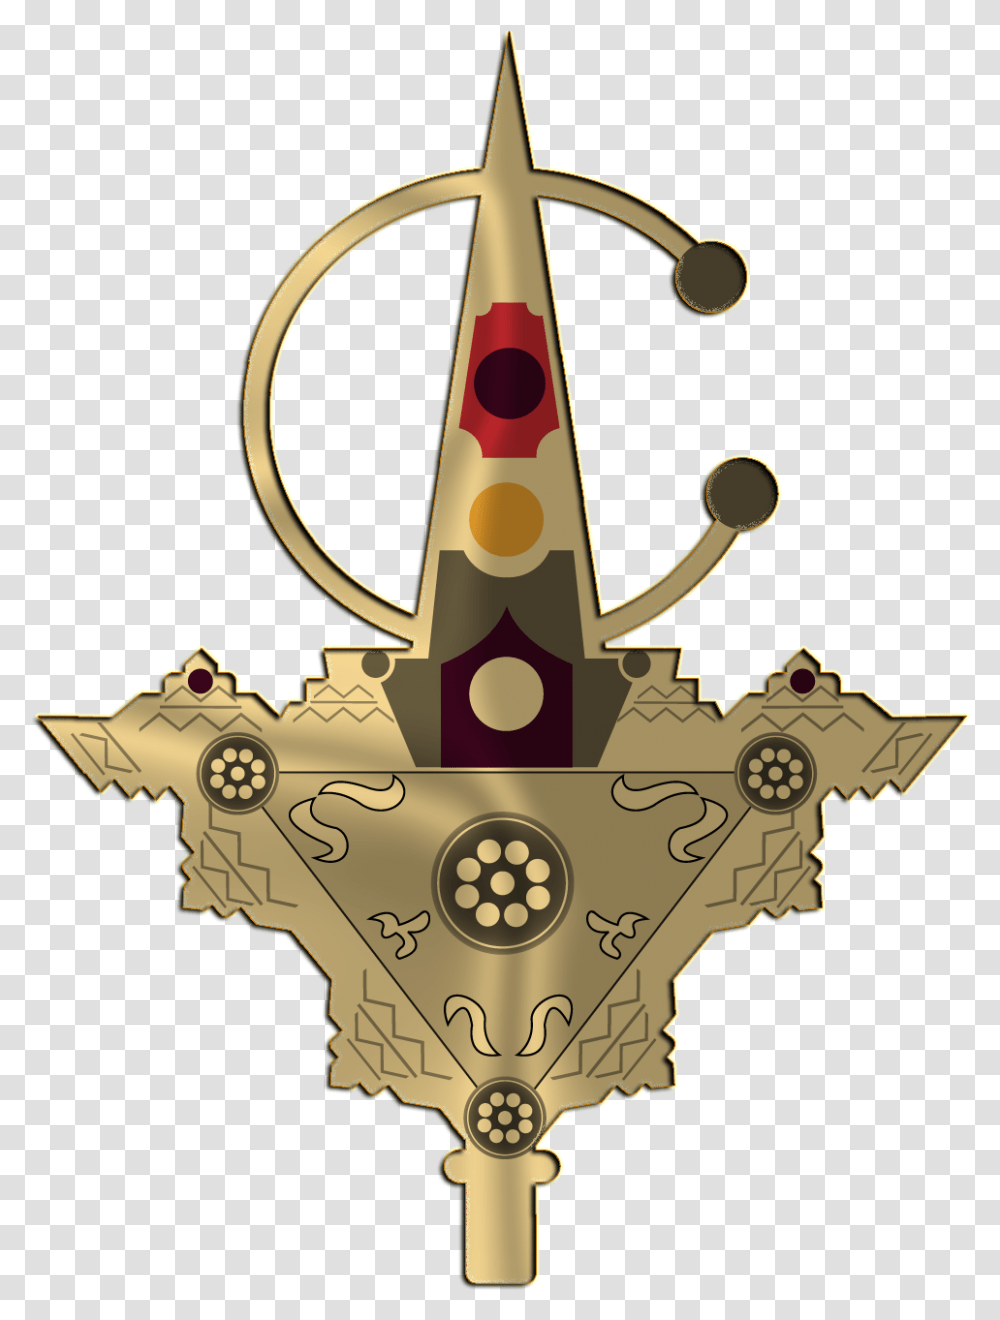 Tazrzit Vector By Ladouzi D7gl0v Emblem, Cross, Star Symbol, Crown Transparent Png